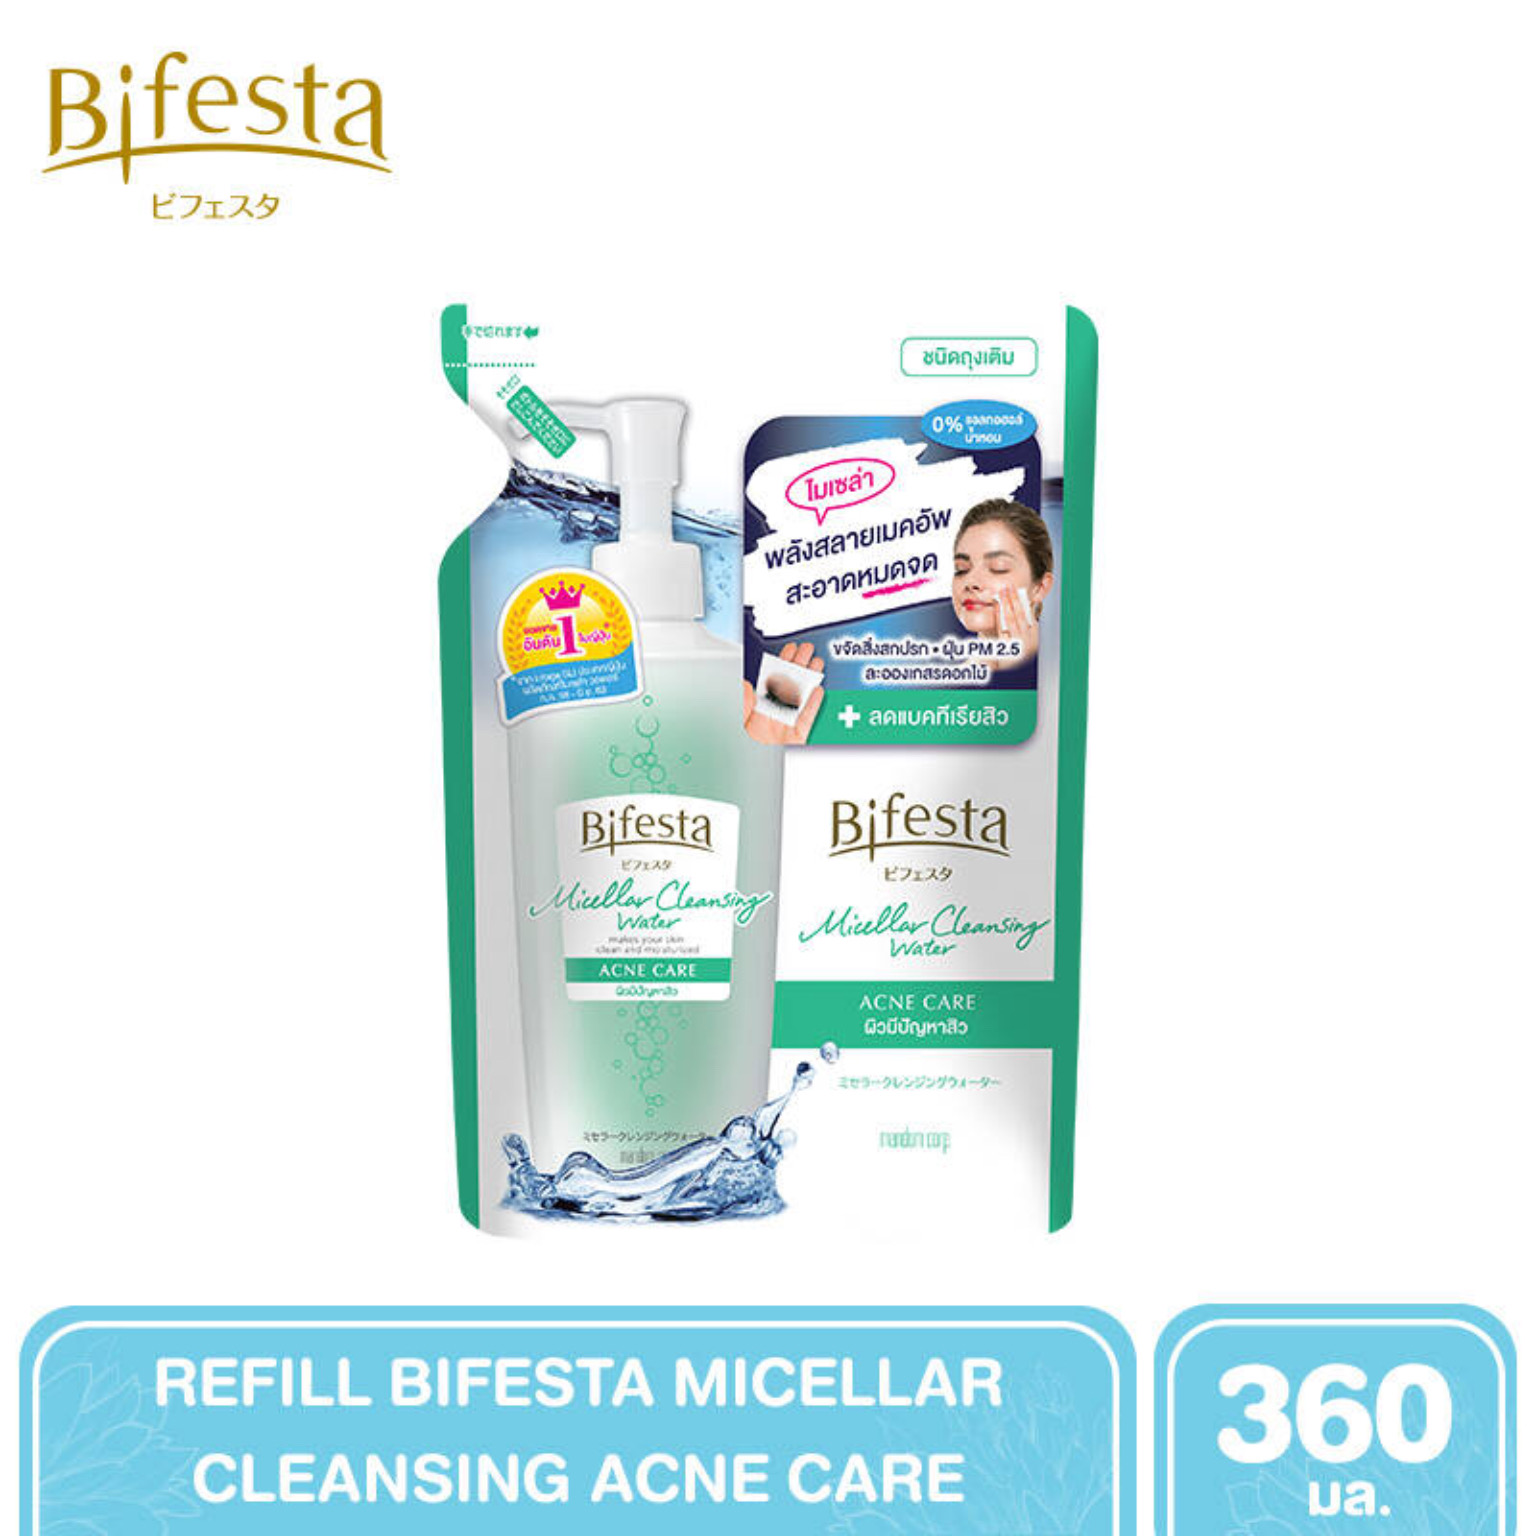 แนะนำ Bifesta Refill Cleansing Lotion Acne Care 360 ml.- คลีนซิ่งโลชั่น โลชั่นเช็ดเครื่องสำอางสูตรน้ำสำหรับผิวที่เป็นสิวโดยเฉพาะ ขนาด 360 มล.(ชนิดเติม) 1ถุง